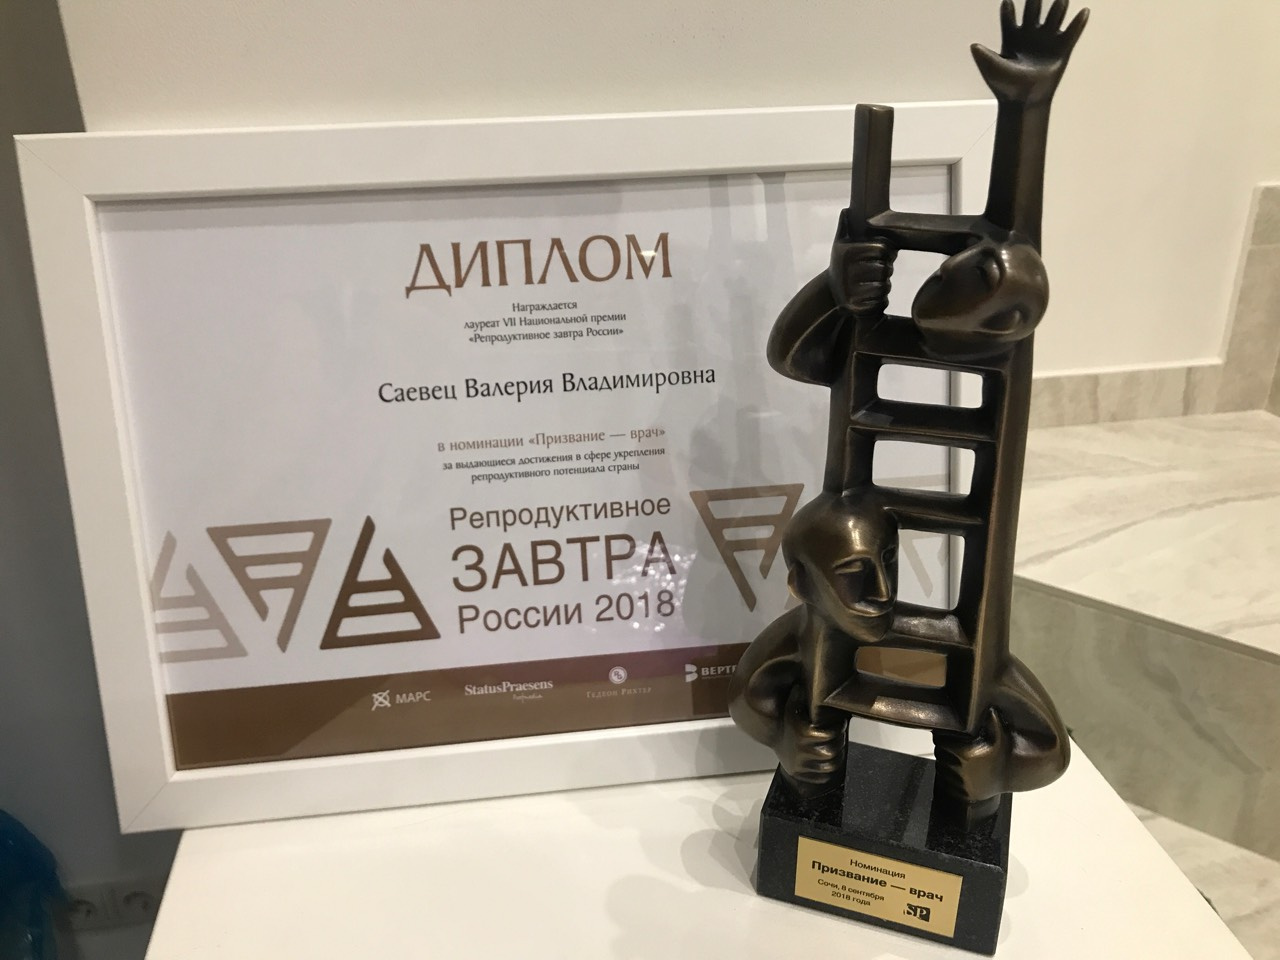 Доктору из Челябинска вручили награду в номинации «Призвание — врач»